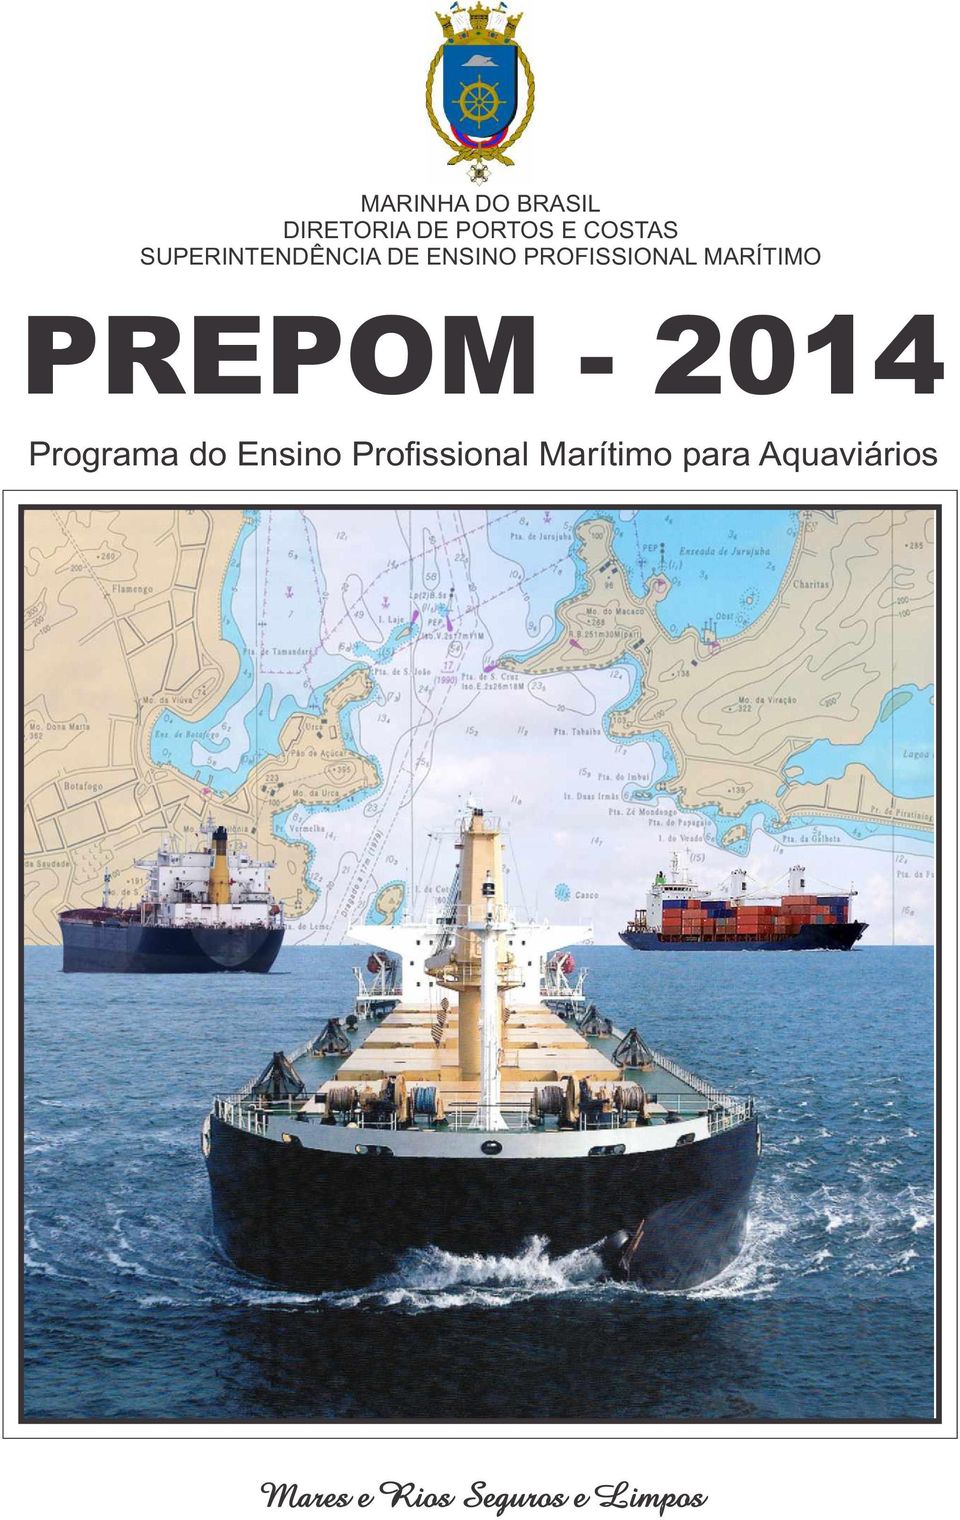 PREPOM - 2014 Programa do Ensino Profissional